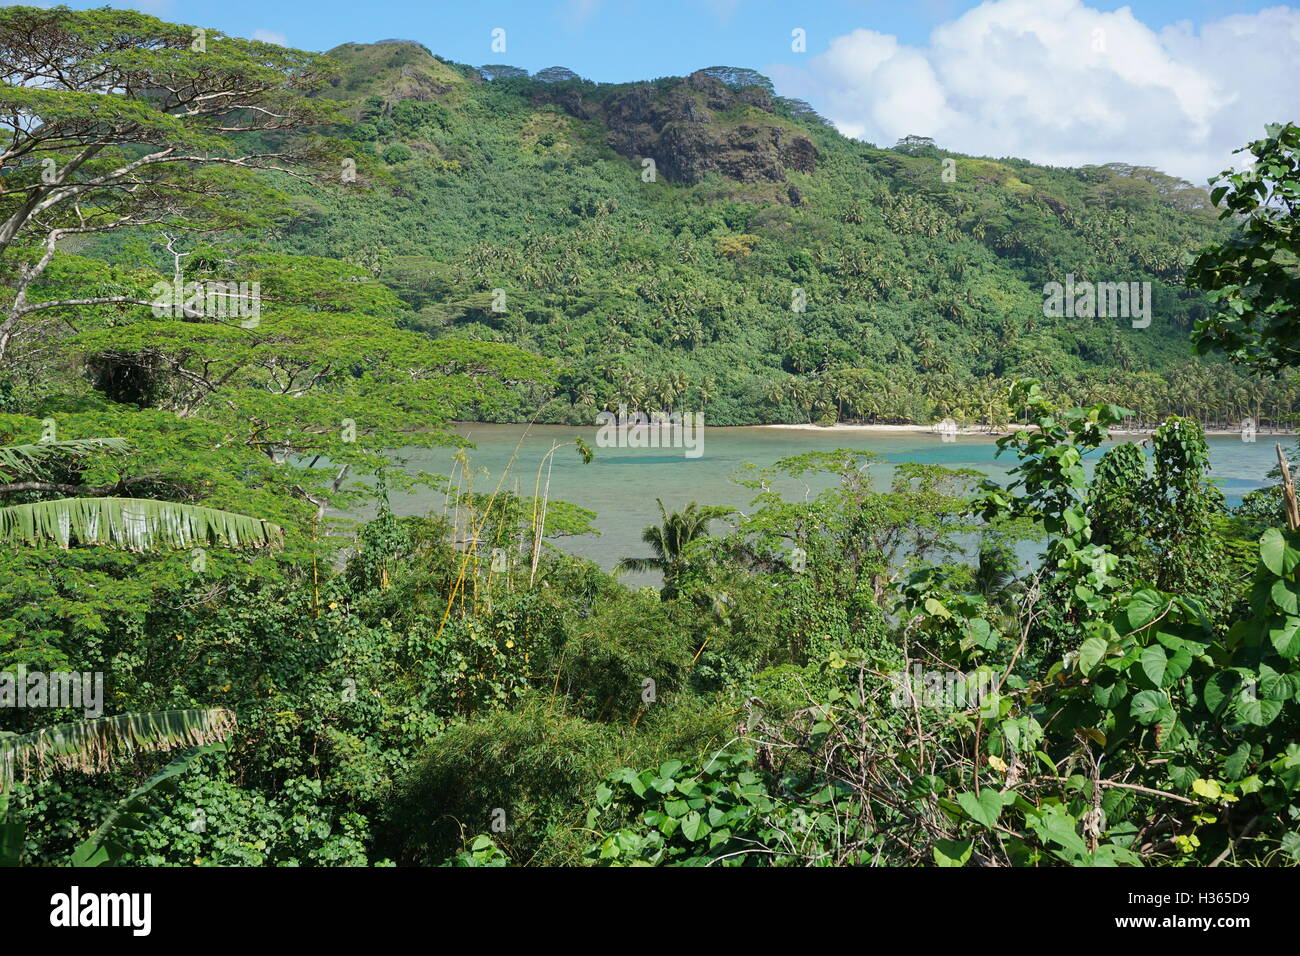 La végétation luxuriante et vue sur le lagon d'une île tropicale, Huahine, l'océan Pacifique sud, la Polynésie Française Banque D'Images